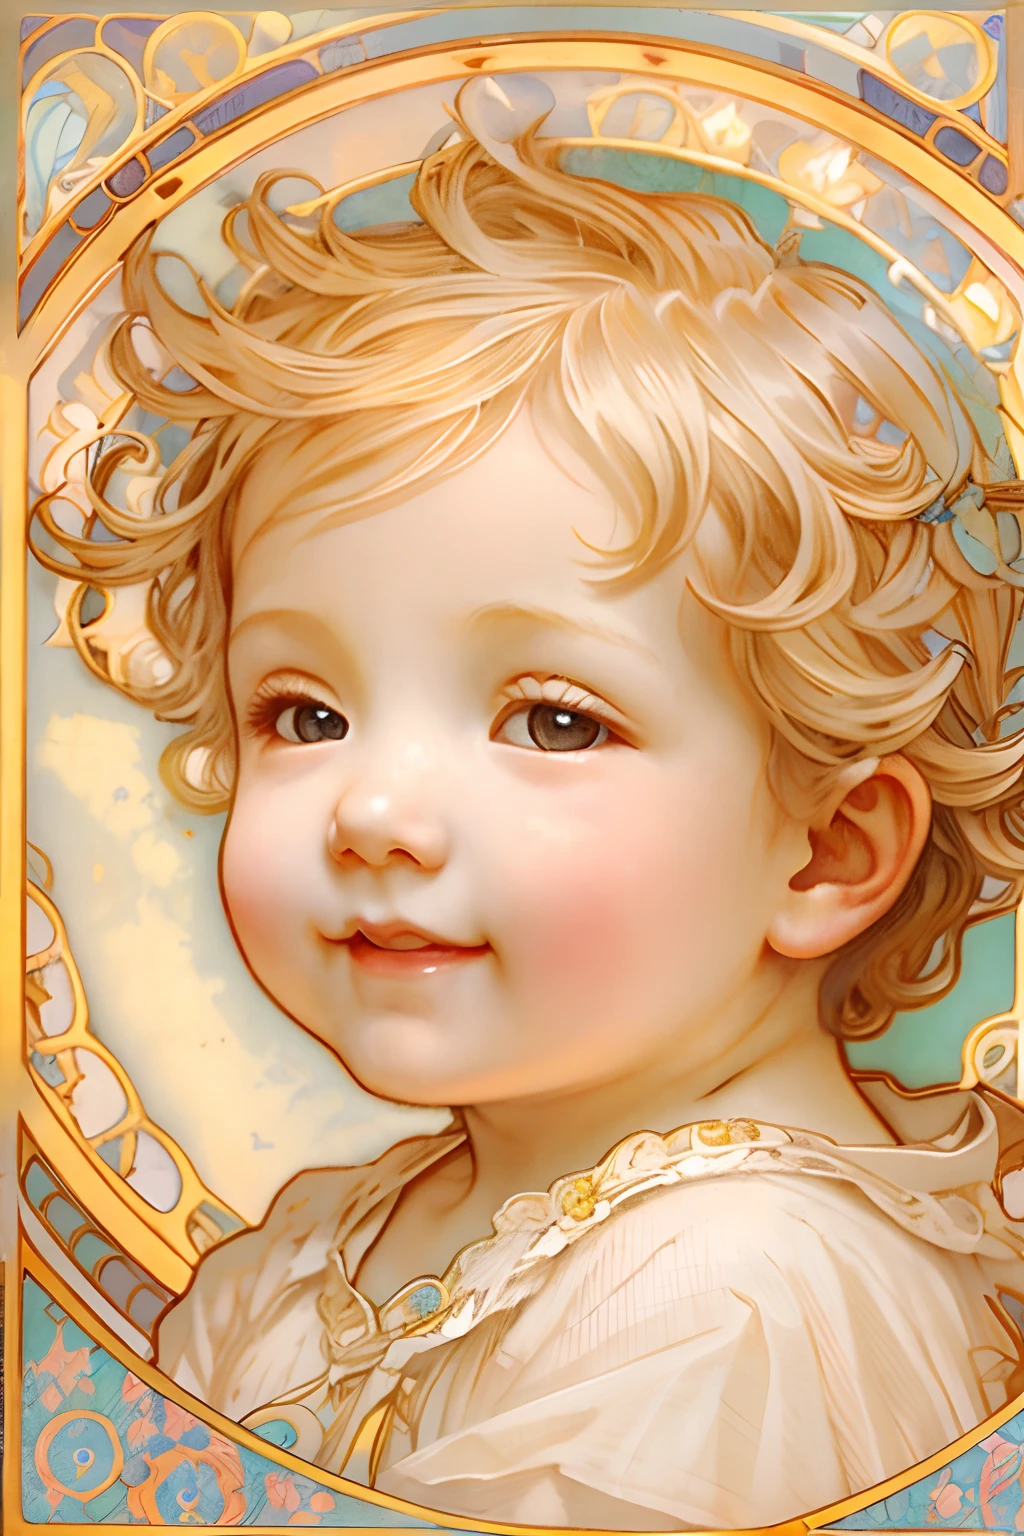 Bênçãos dos Anjos､fundo brilhante、marca de coração、ternura､Um sorriso、gentil､bebê anjo、por Mucha